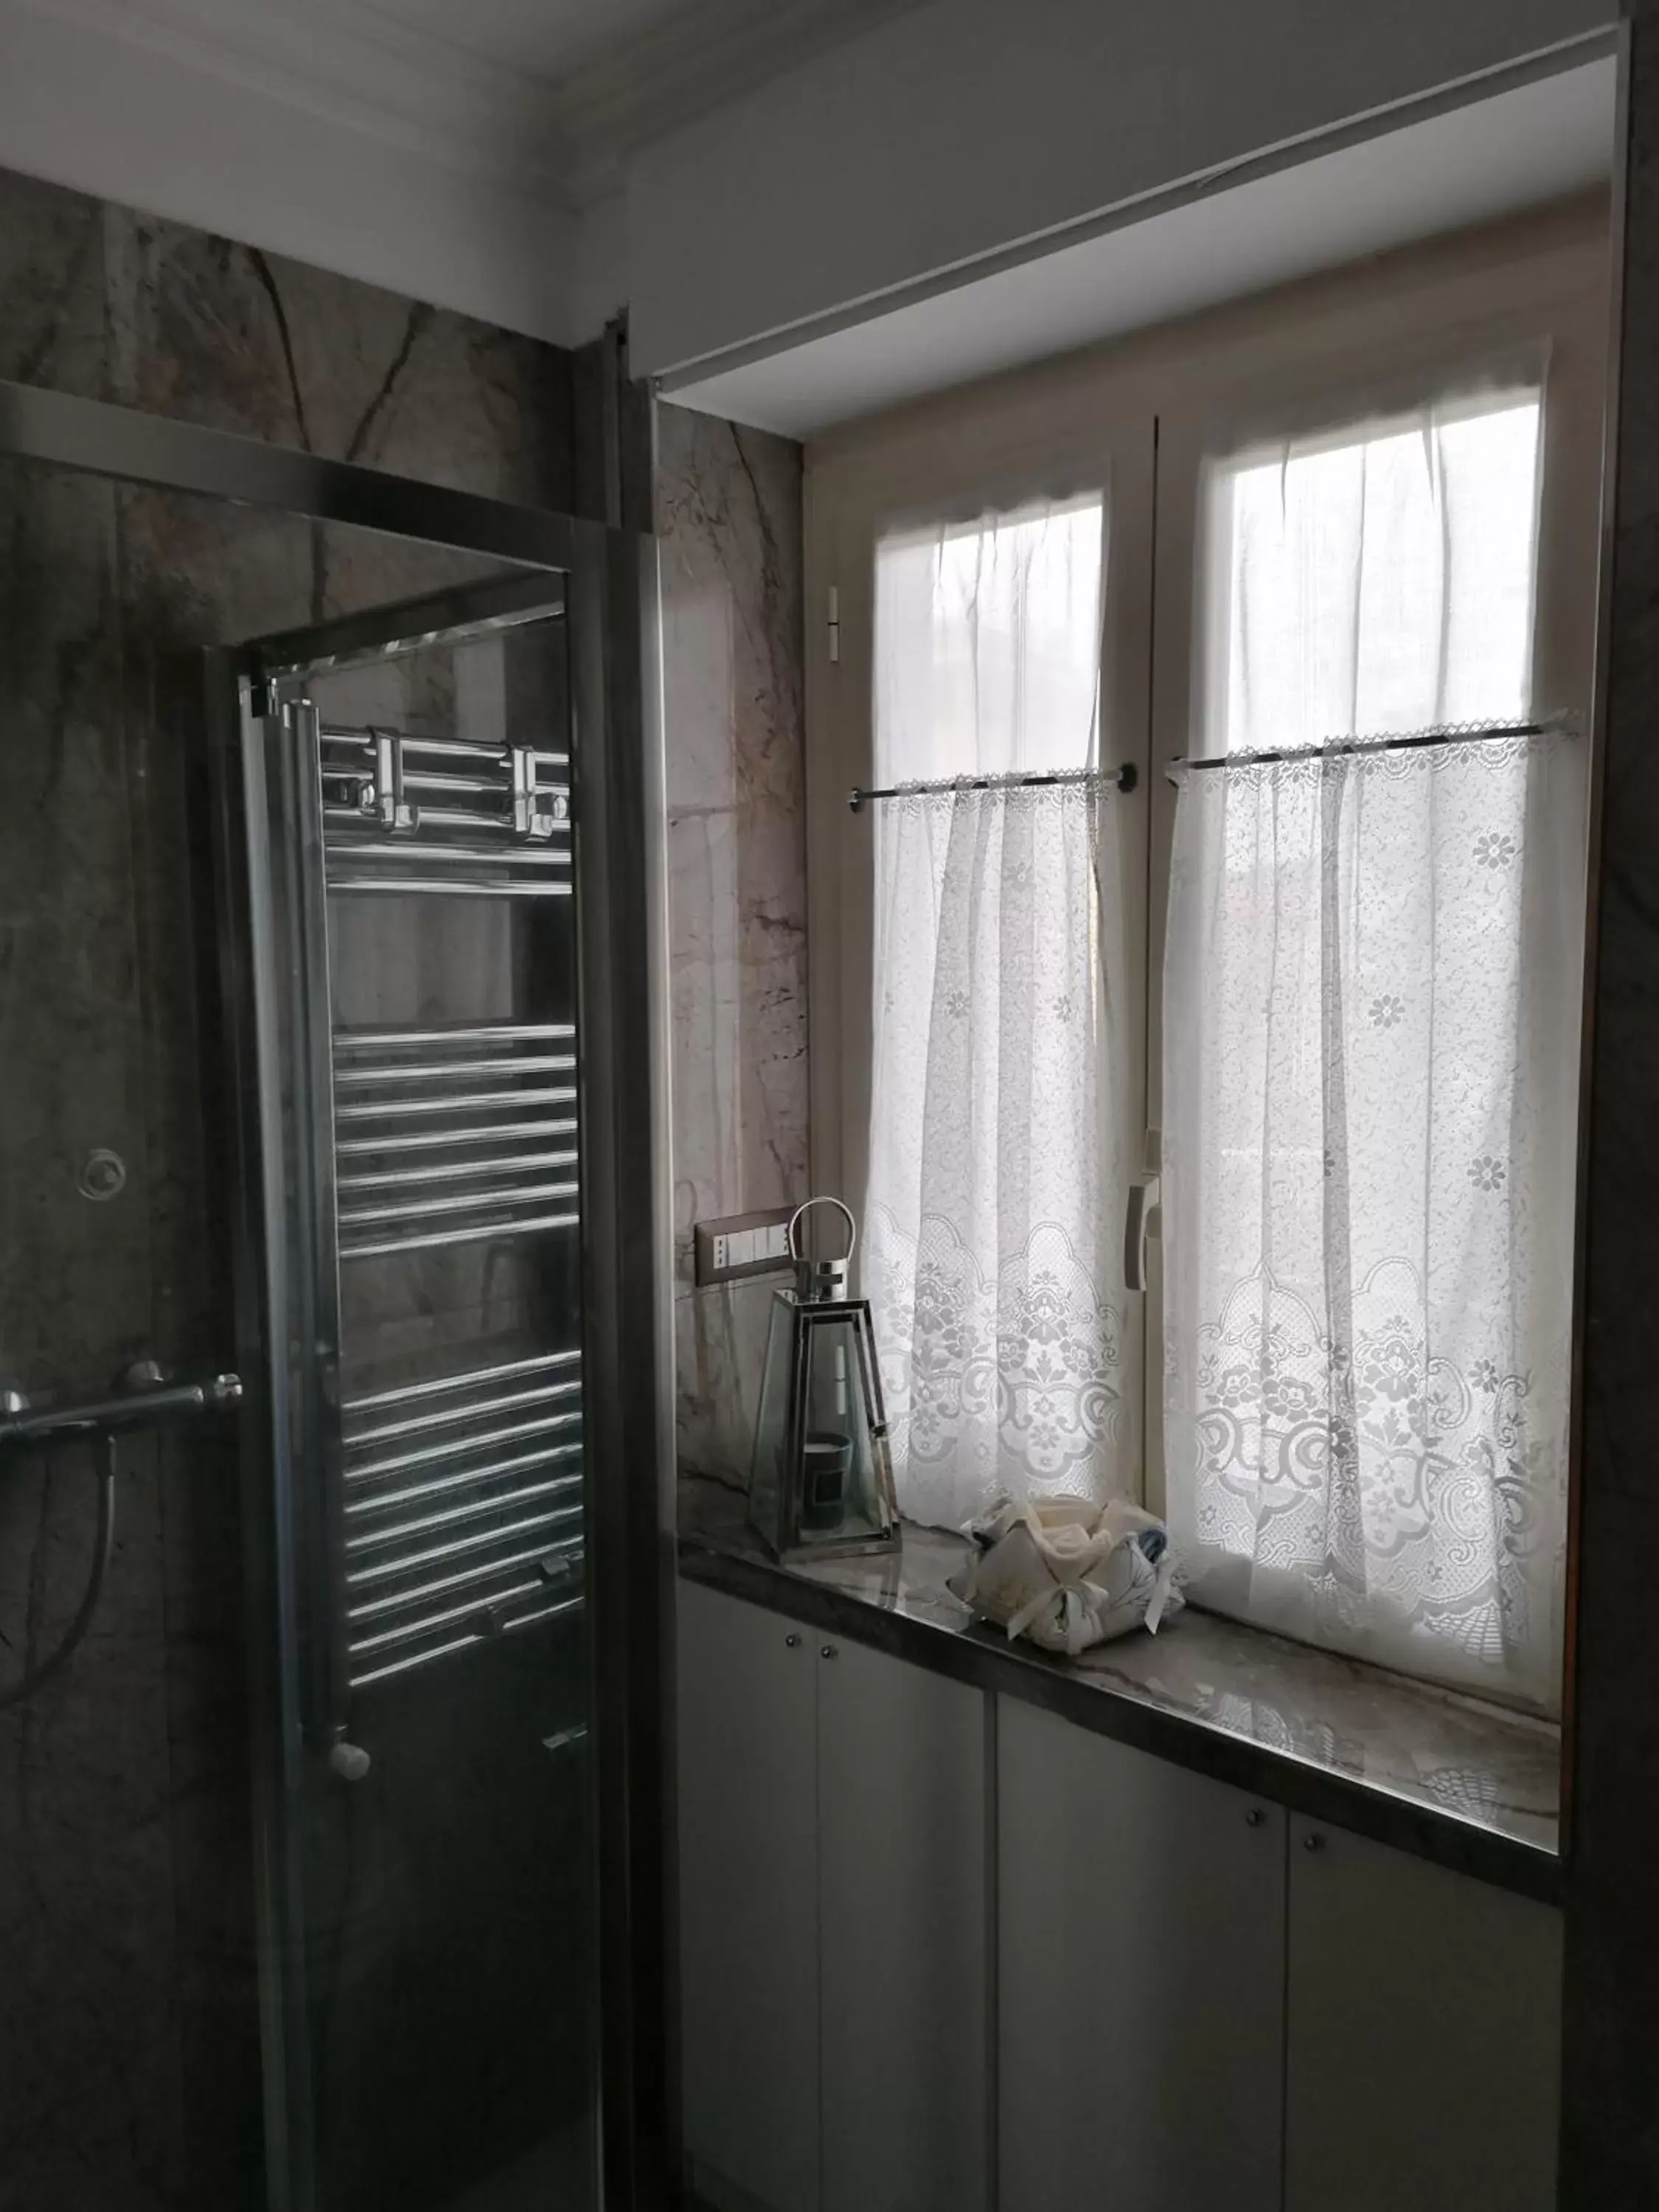 Steam room, Bathroom in B&B Buon Cammino Tuscia Viterbo